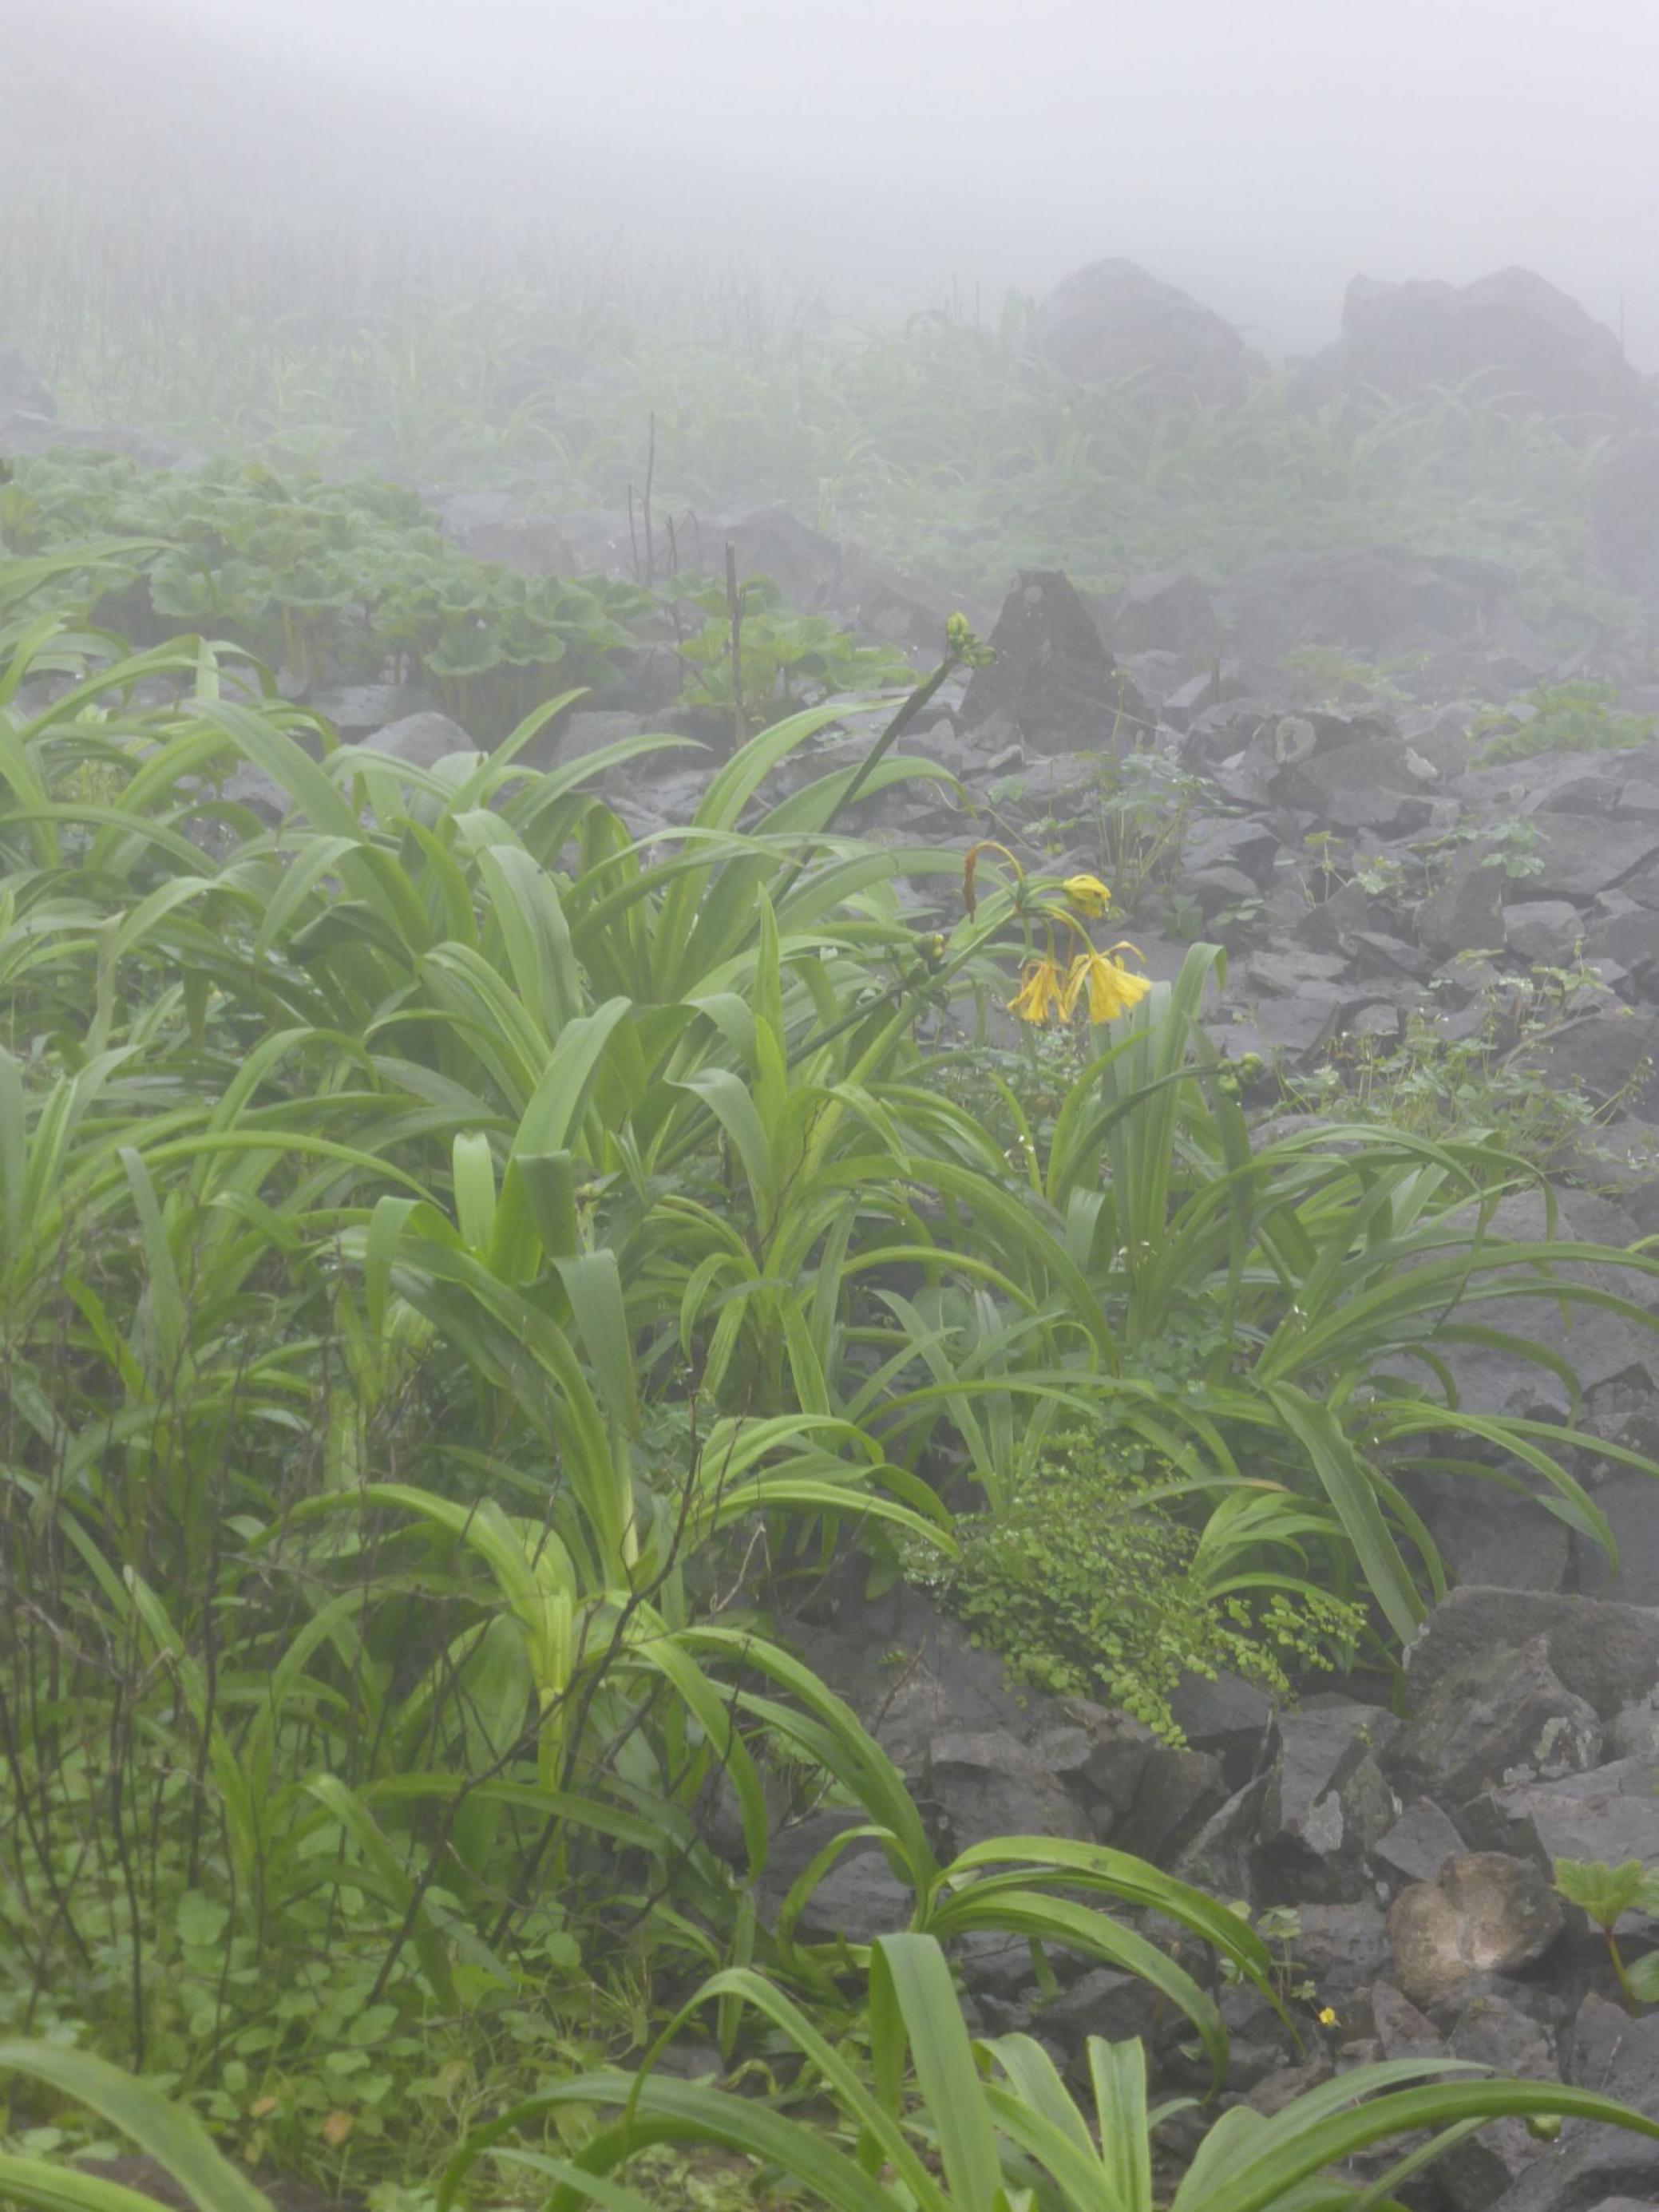 Neblige Landschaft, auf dem Boden schwarze Steine, dazwischen wchsen grüne Stengel, eine gelbe Blüte, die Amancaes-Blume